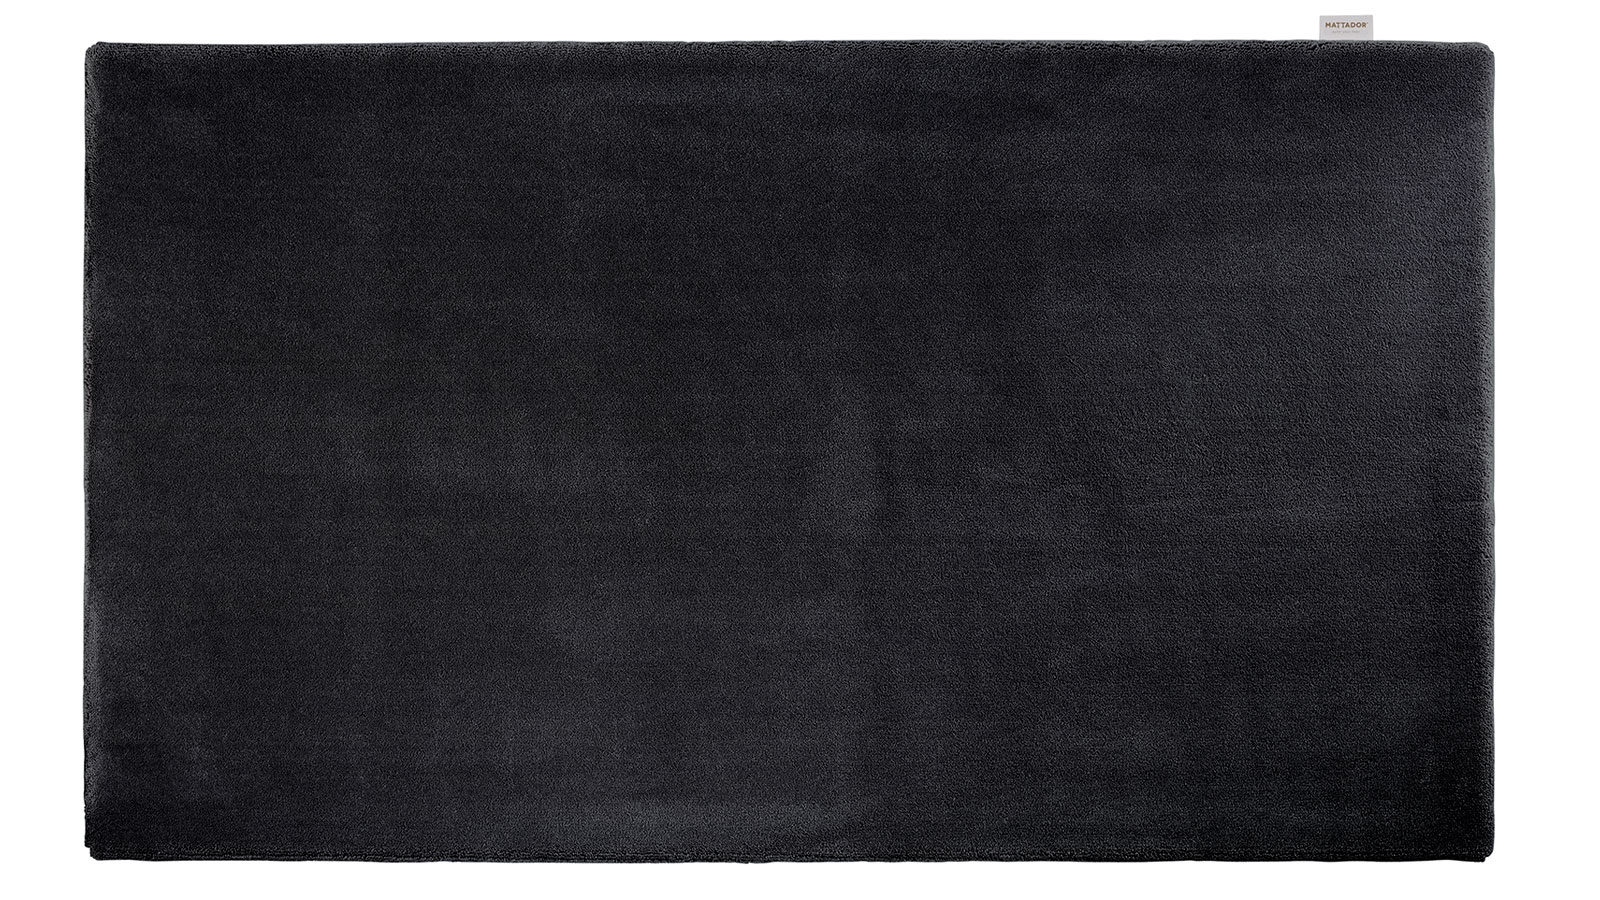 Bovenaanzicht van zwart vloerkleed op maat model Tuxedo van Mattador